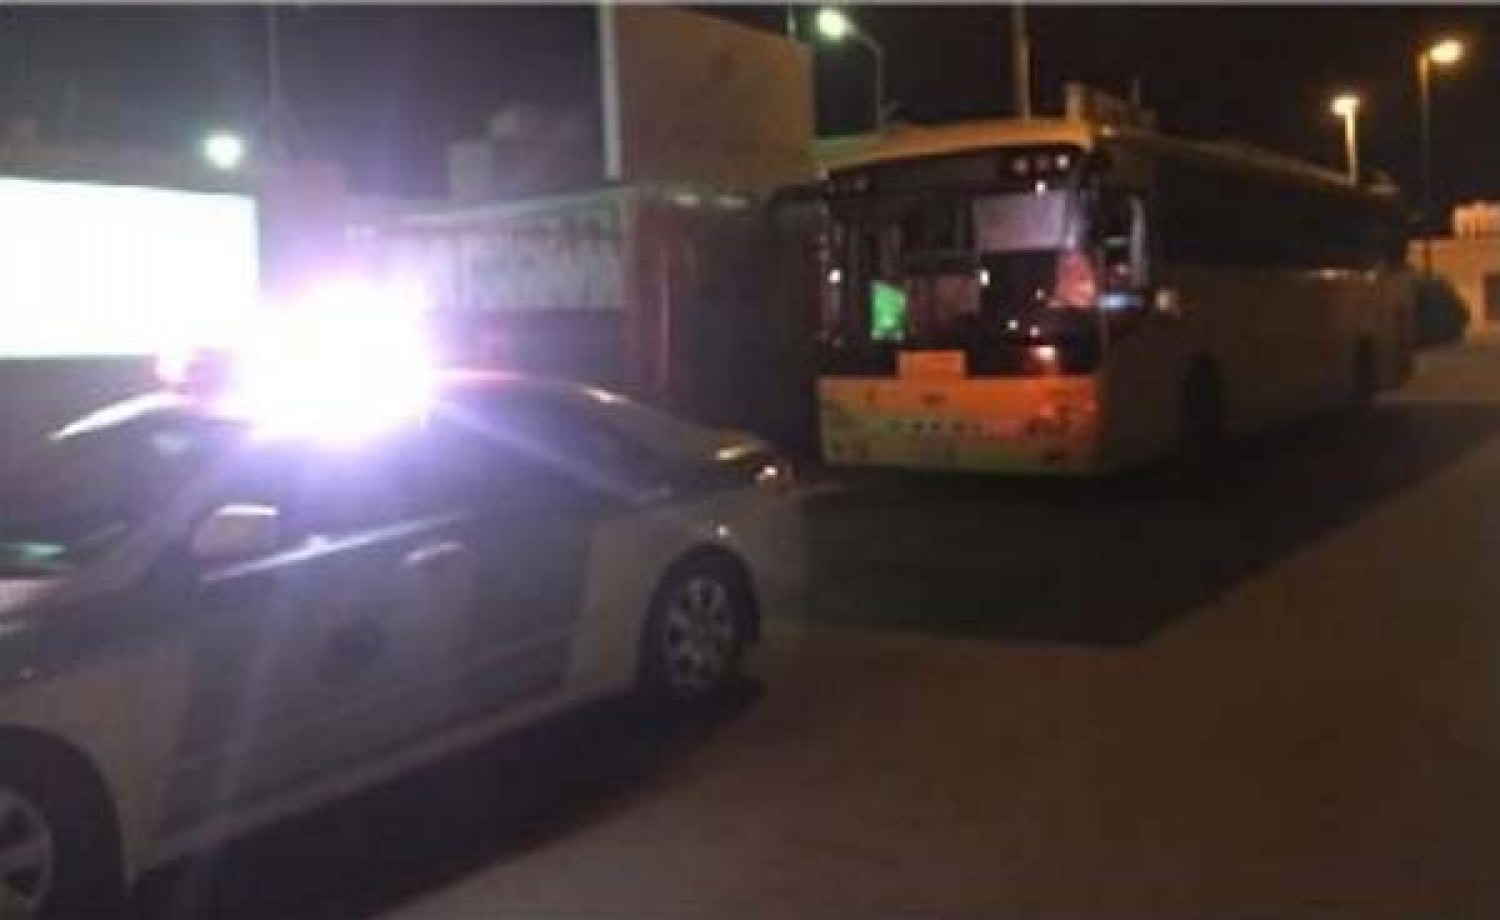 "المرور" يعلن القبض على قائد حافلة مدرسية عكس اتجاه السير بأحد أحياء محافظة حوطة 1